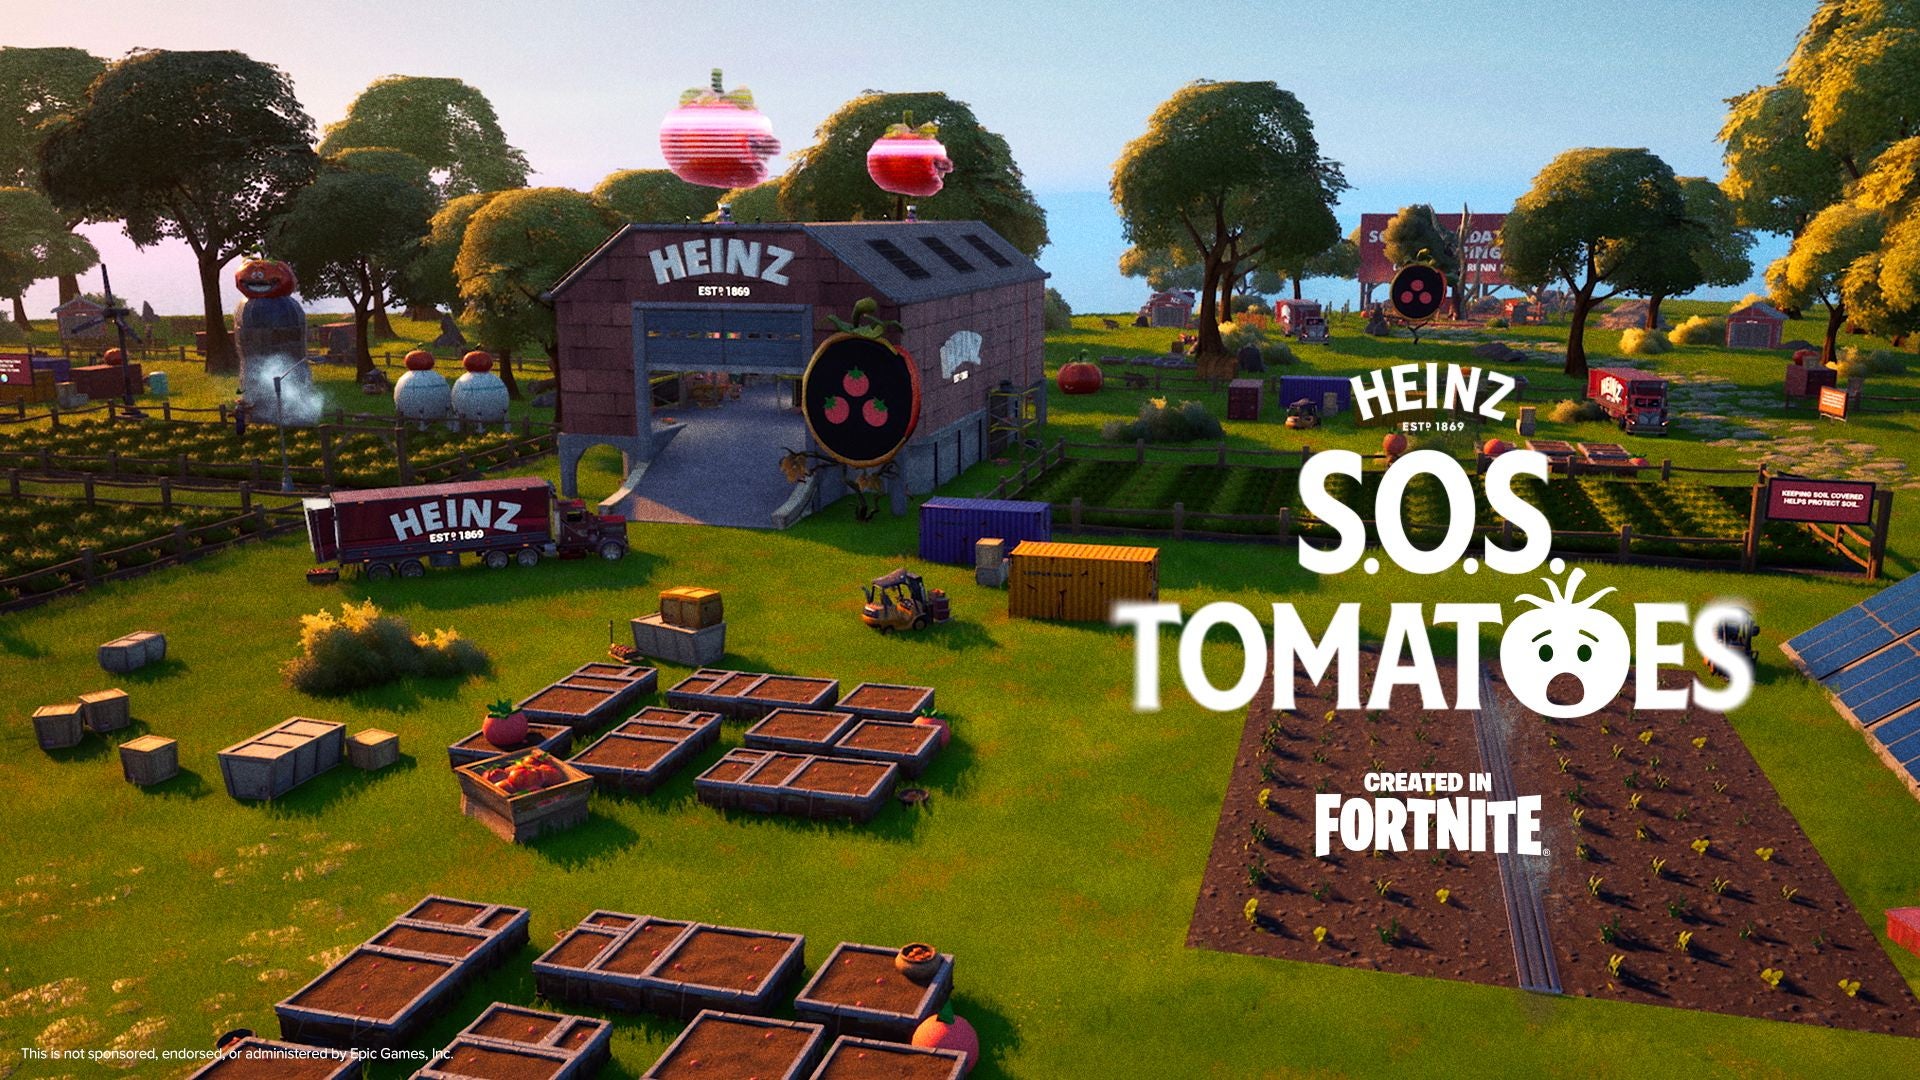 Heinz meluncurkan kampanye kesadaran tomat di Fortnite